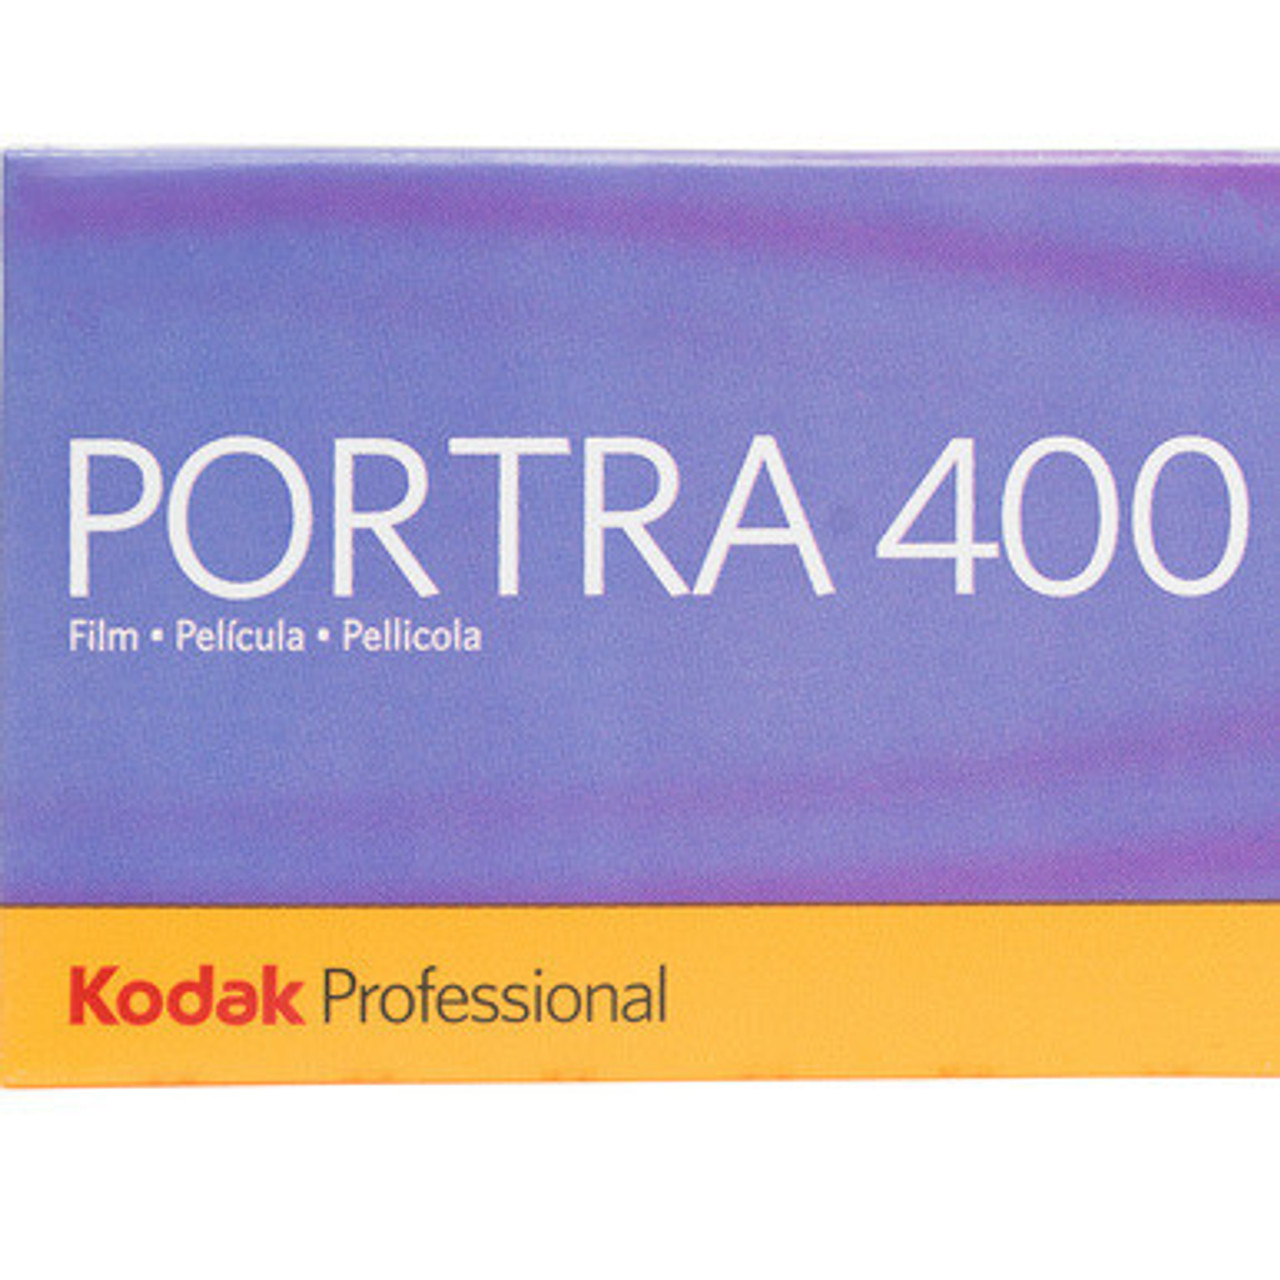 KODAK PORTRA 400 COLOR PRINT FILM (120 ROLL)